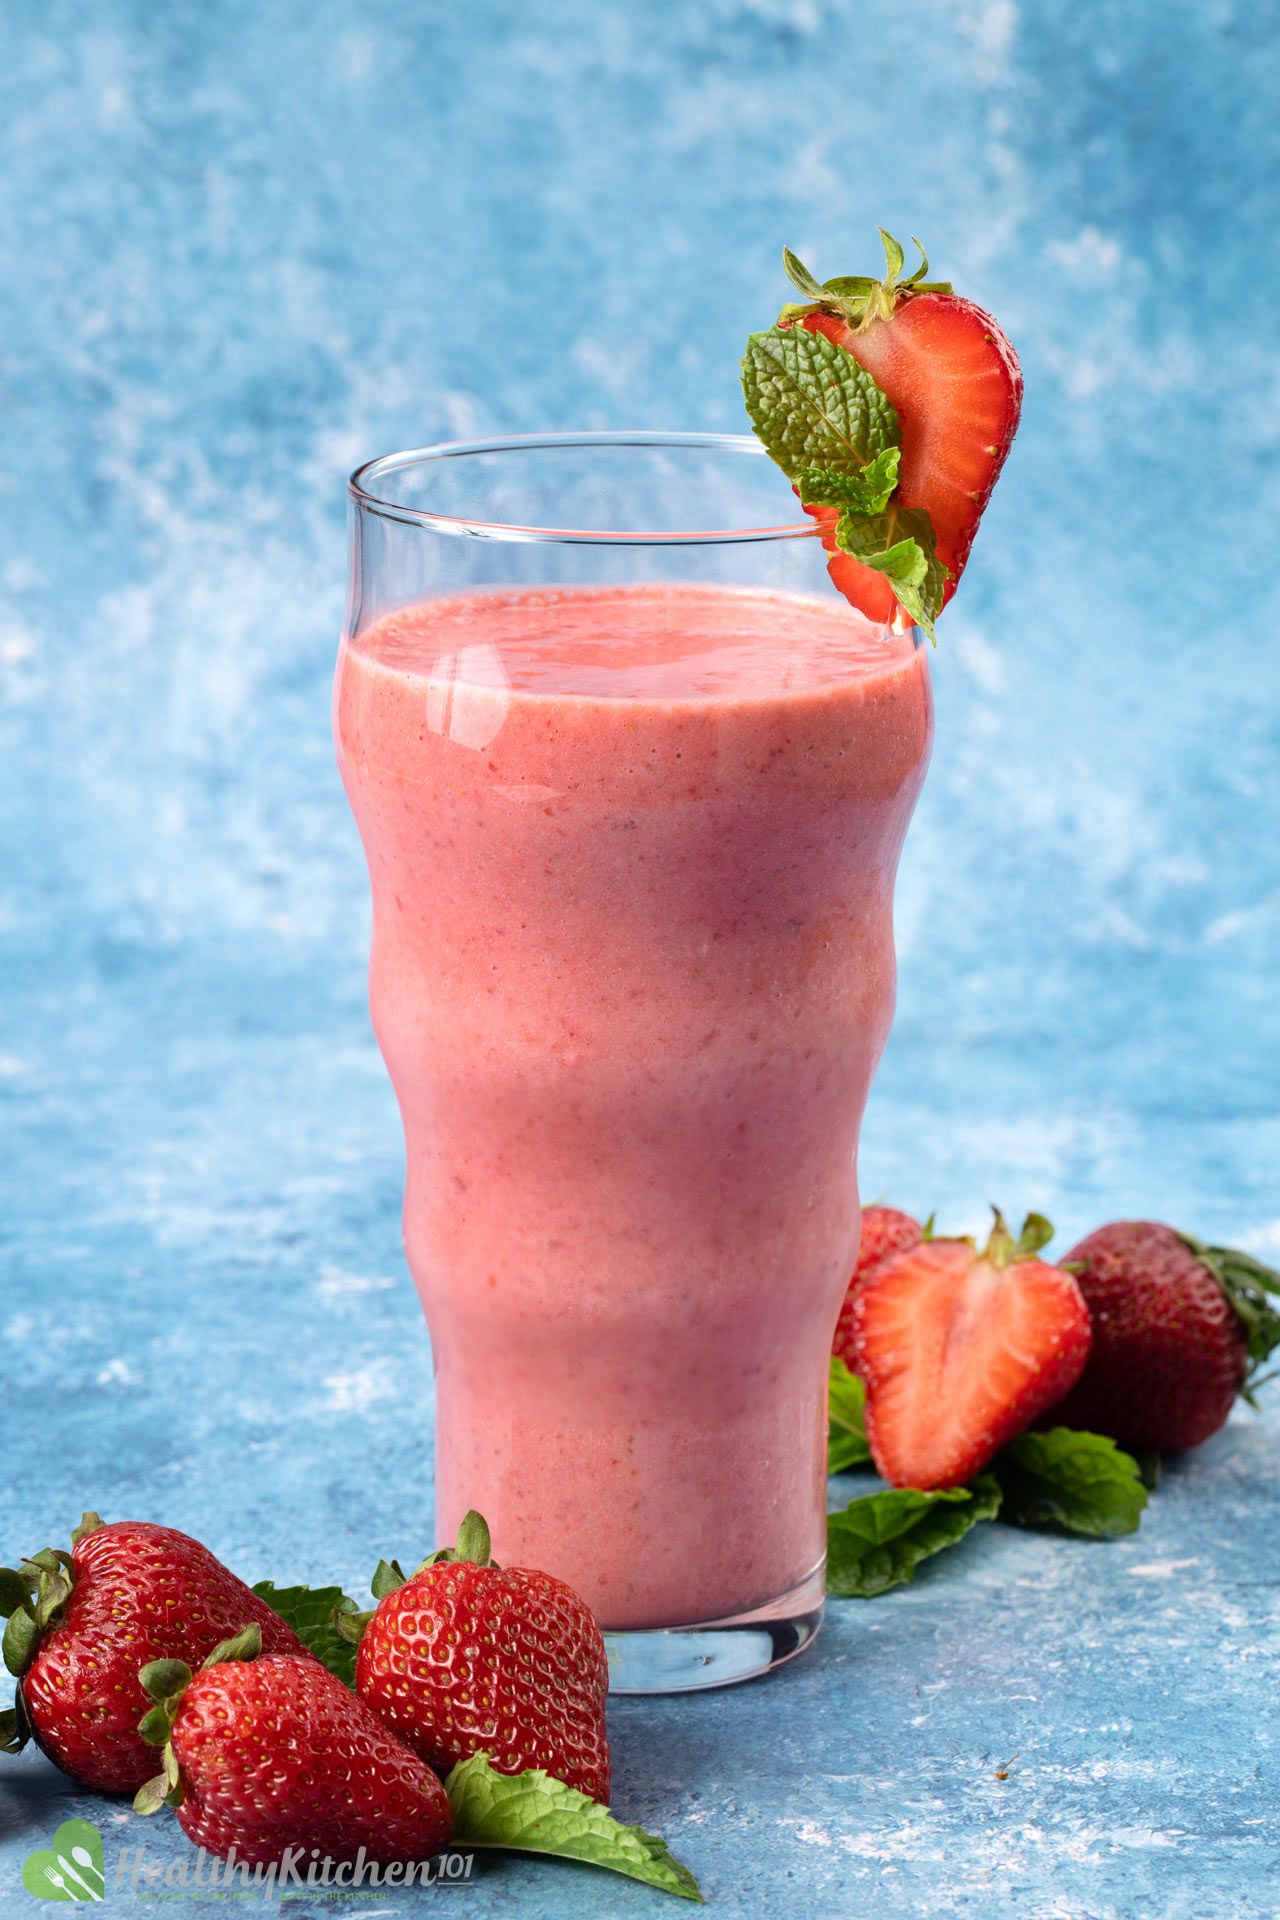 Homemade Strawberry Smoothie Recipe